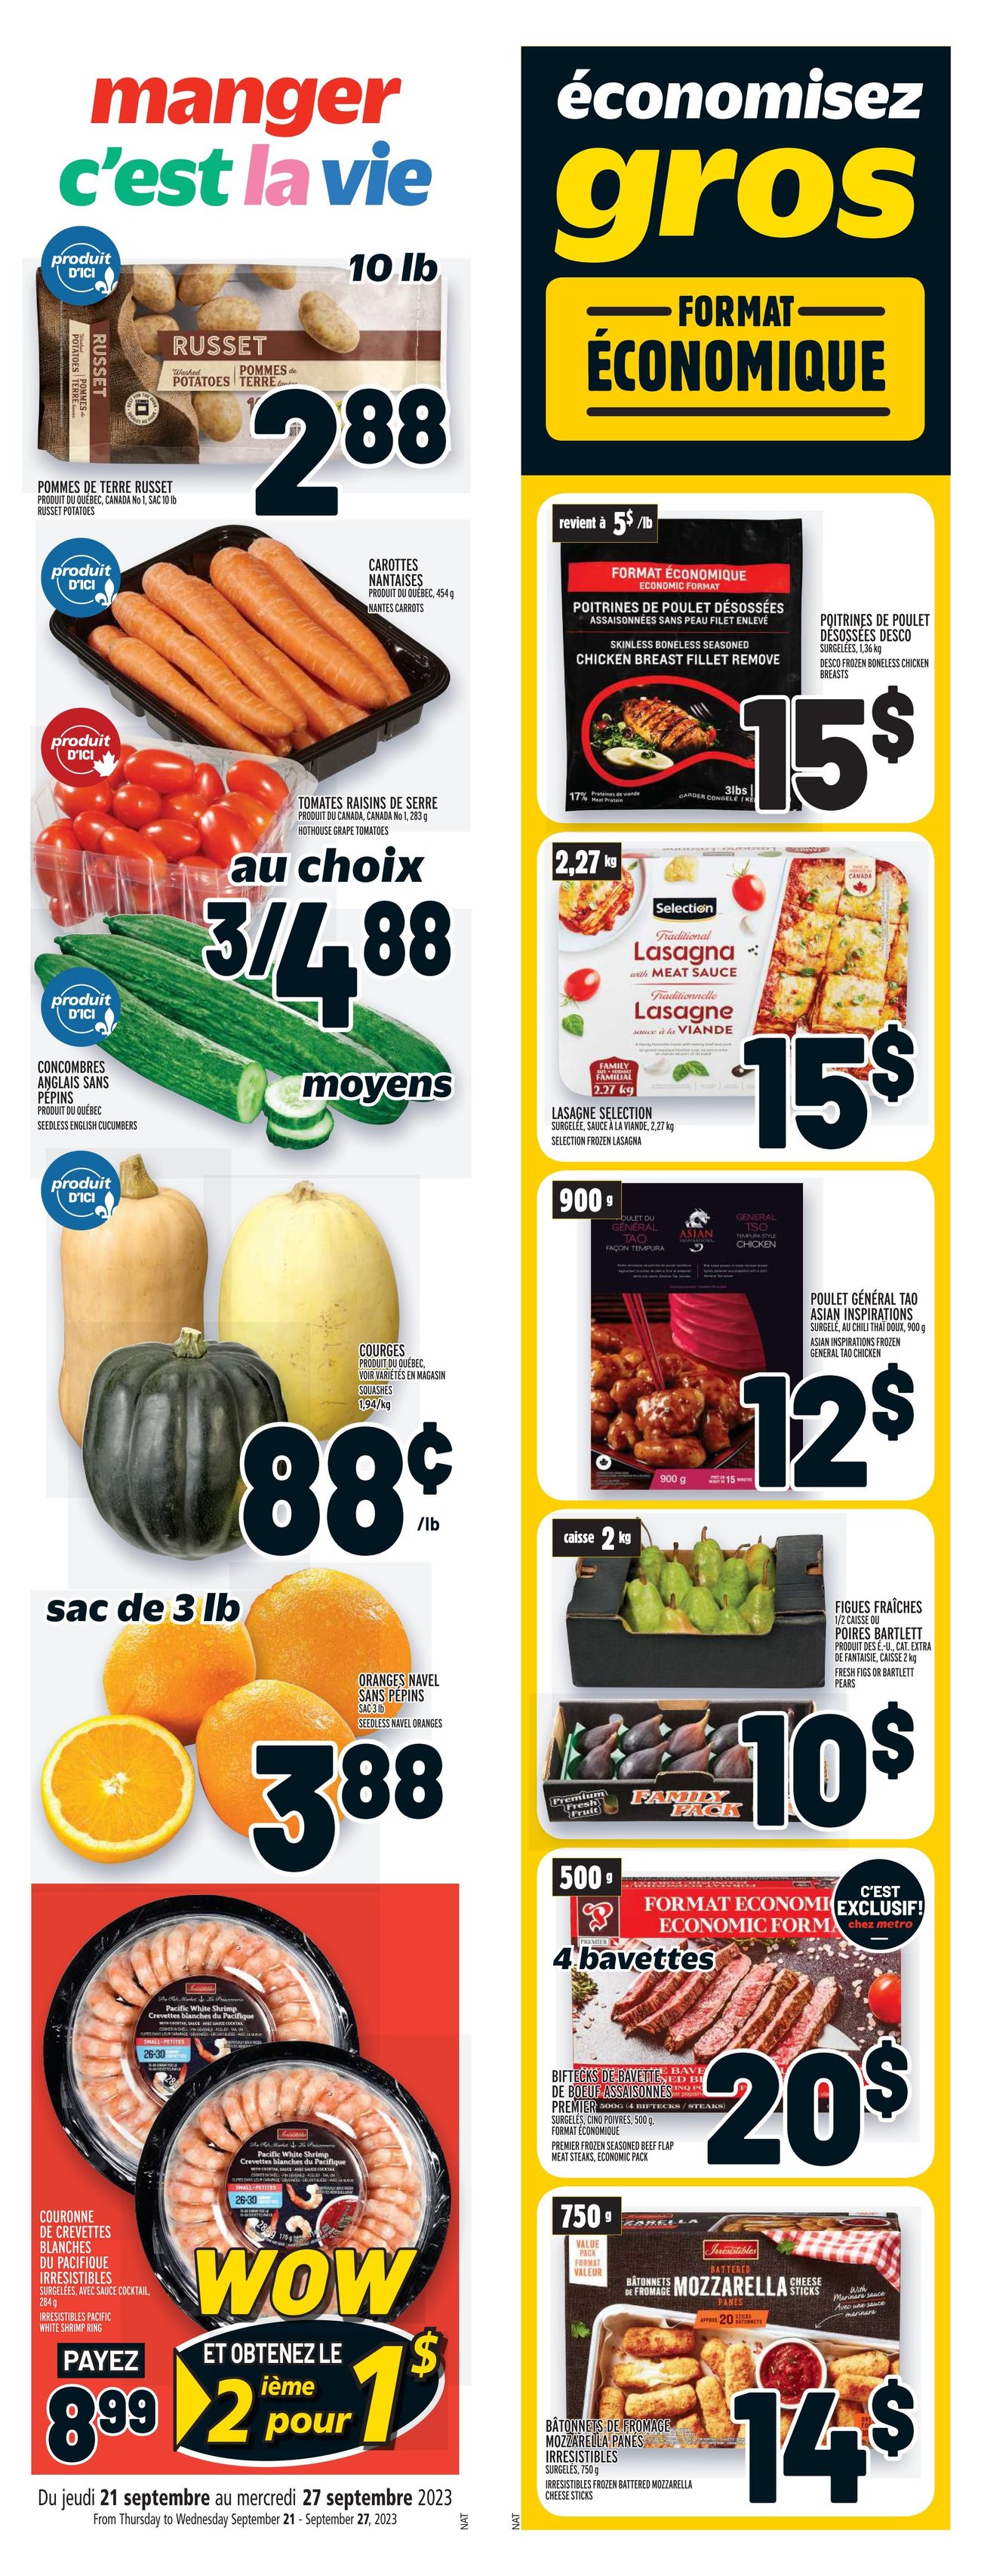 Metro - Quebec - Weekly Flyer Specials - Page 2